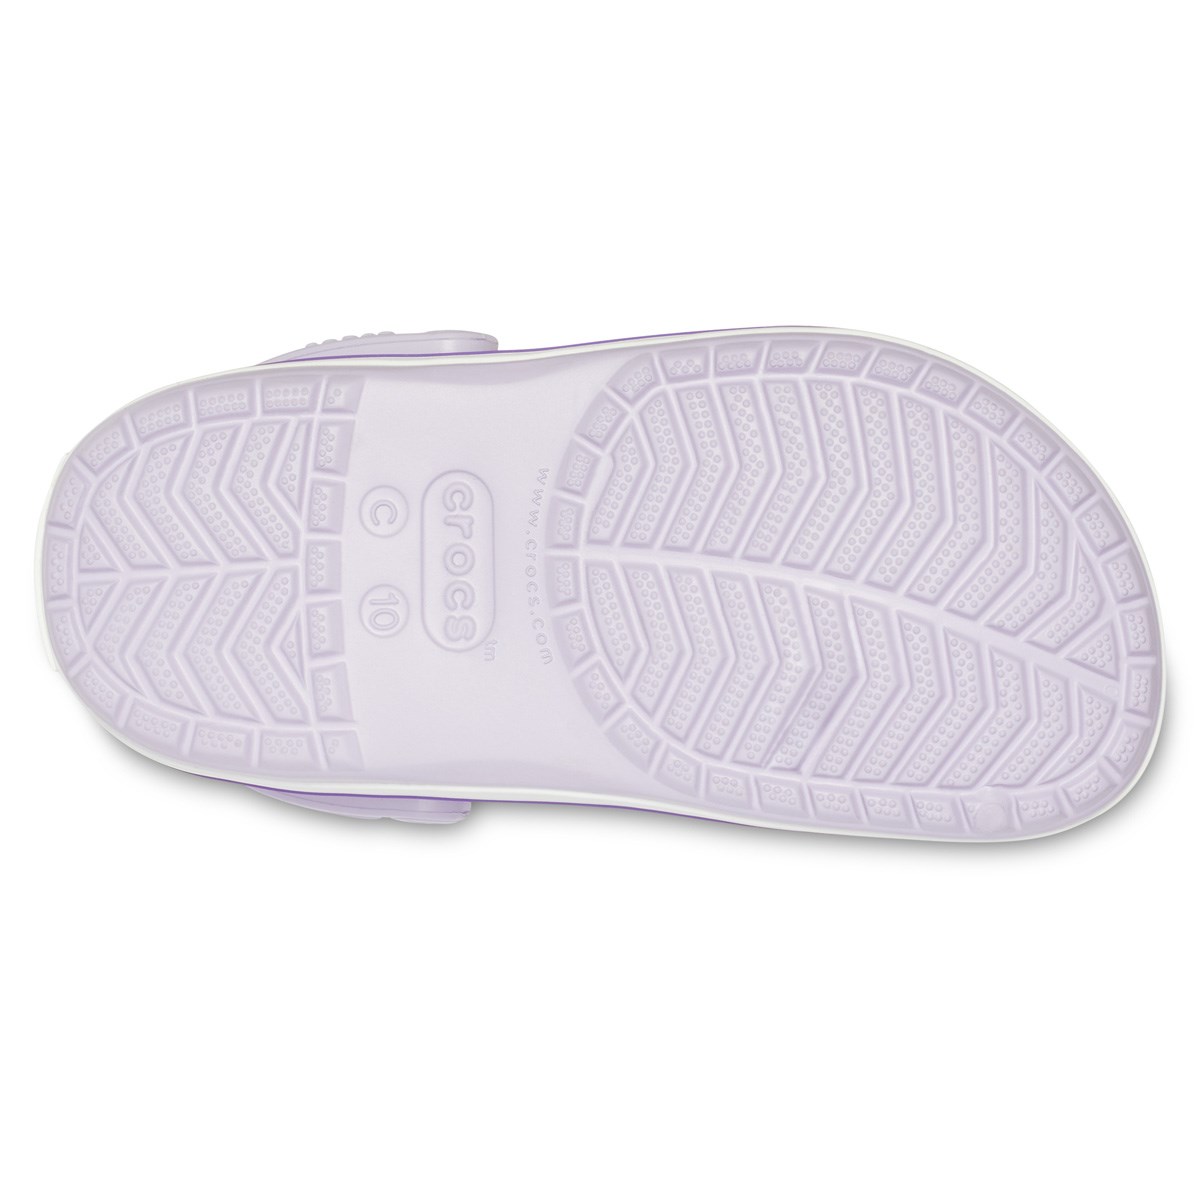 Crocs Sandalet 204537 Lavender/Neon Purple